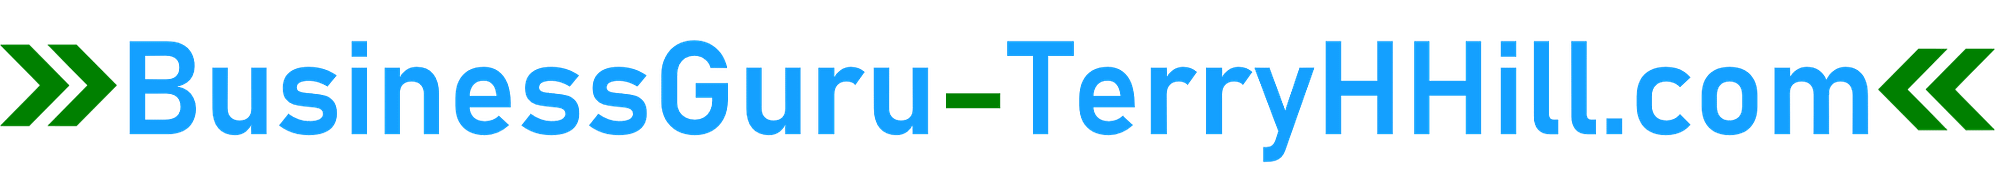 Logo-BusinessGuru-TerryHHill